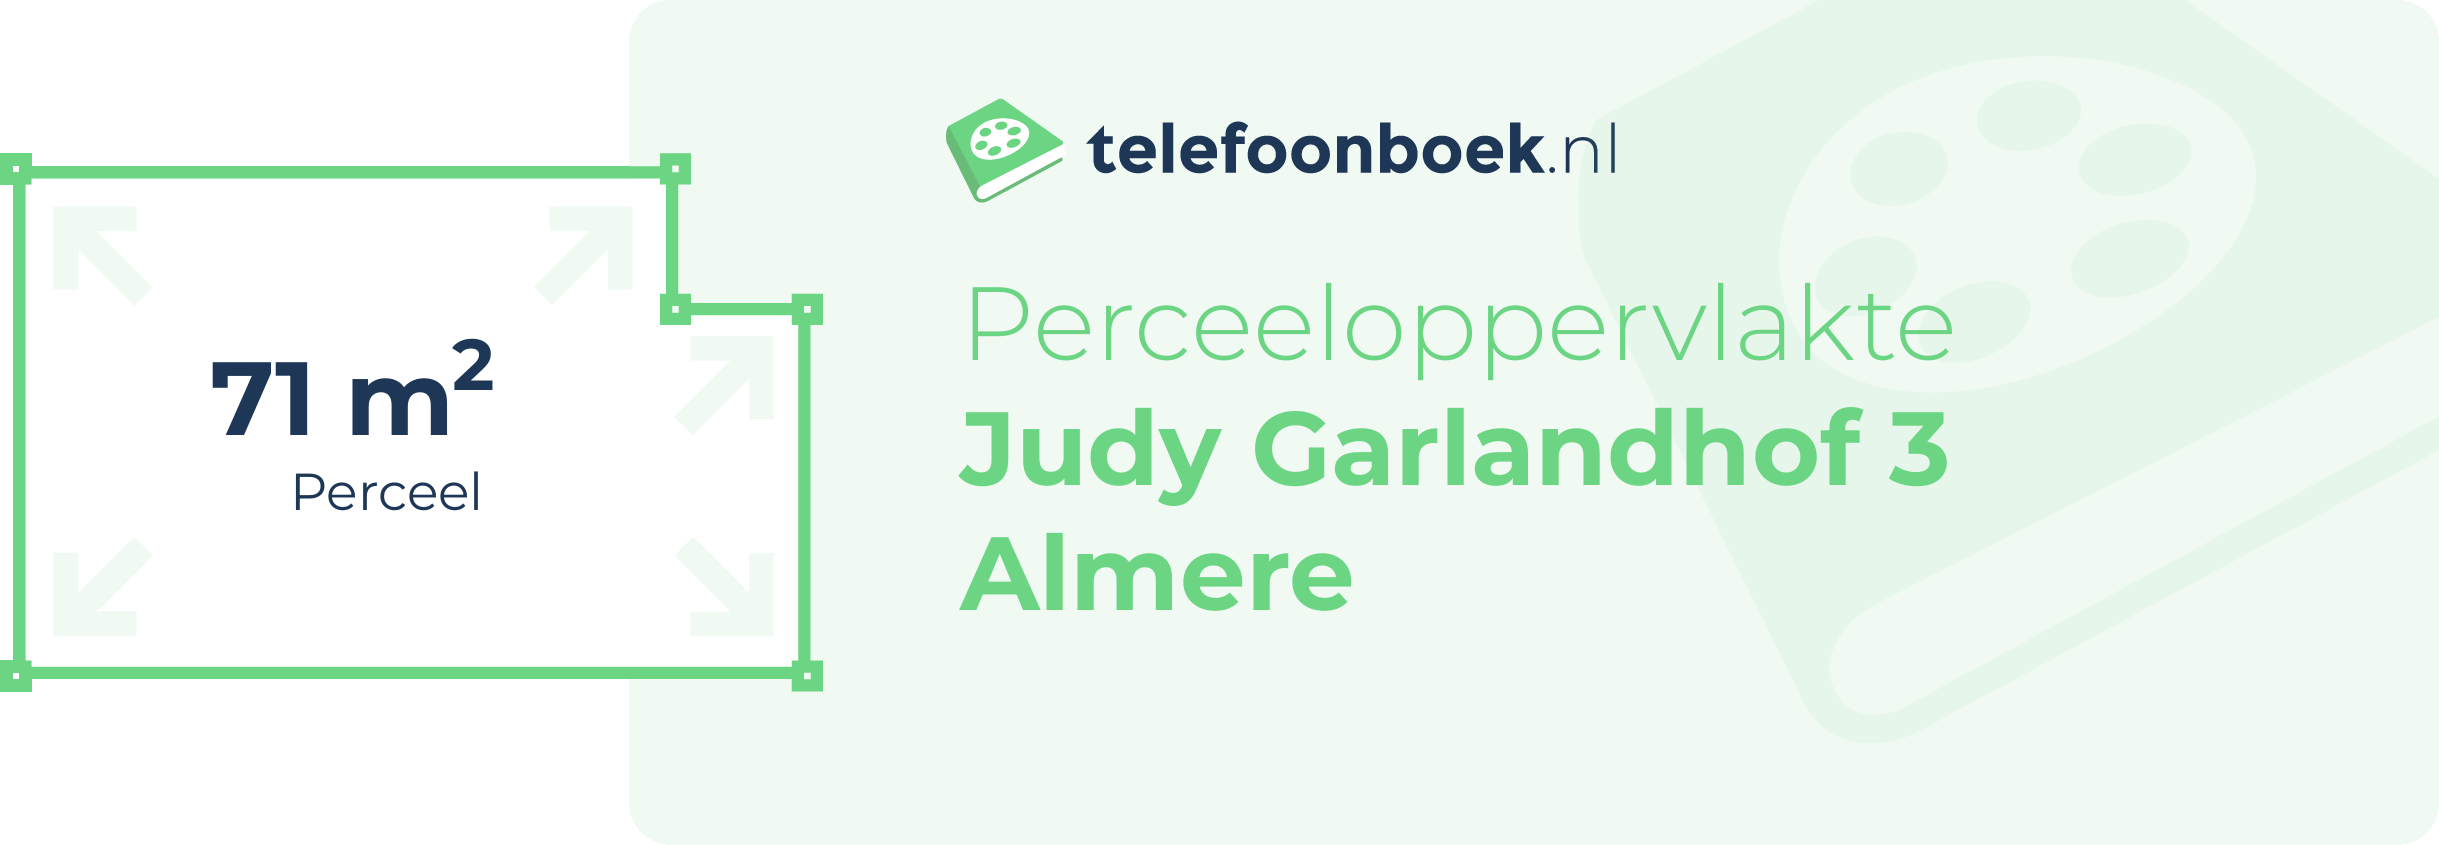 Perceeloppervlakte Judy Garlandhof 3 Almere